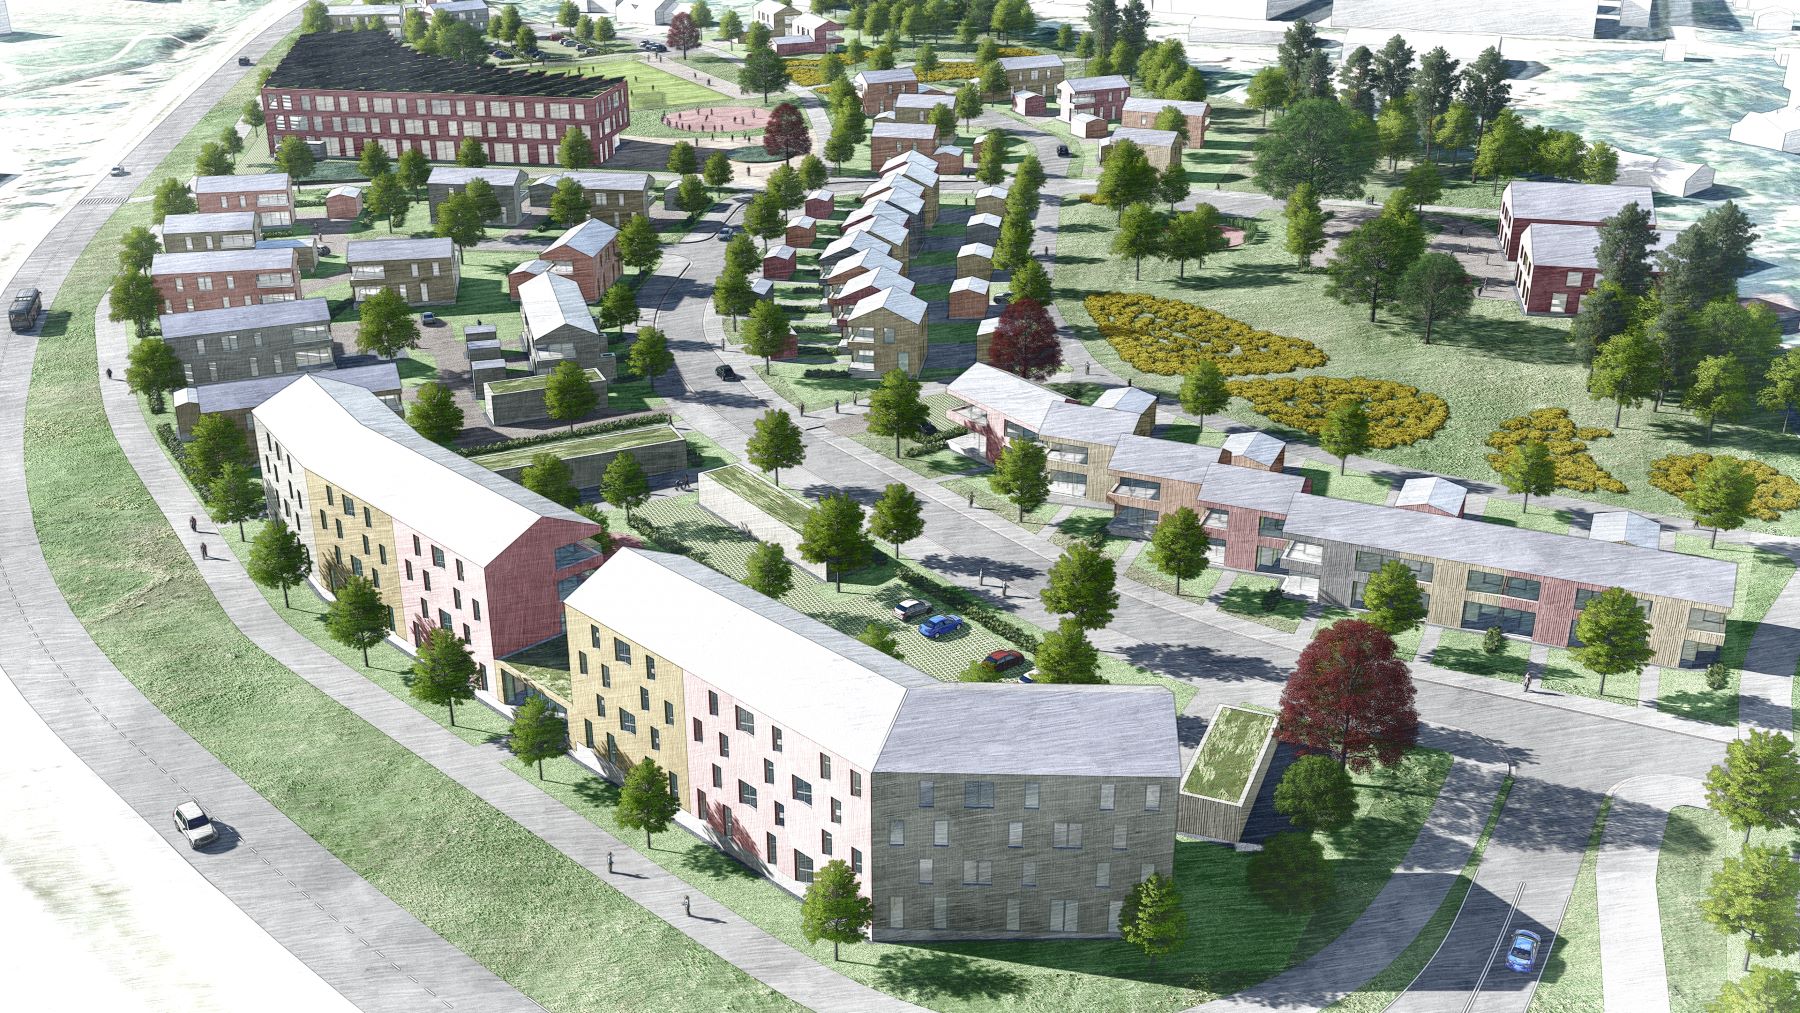 Uudistuneet Asuntomessut vuonna 2026 Lempäälään Saikan alueelle - Lempäälä